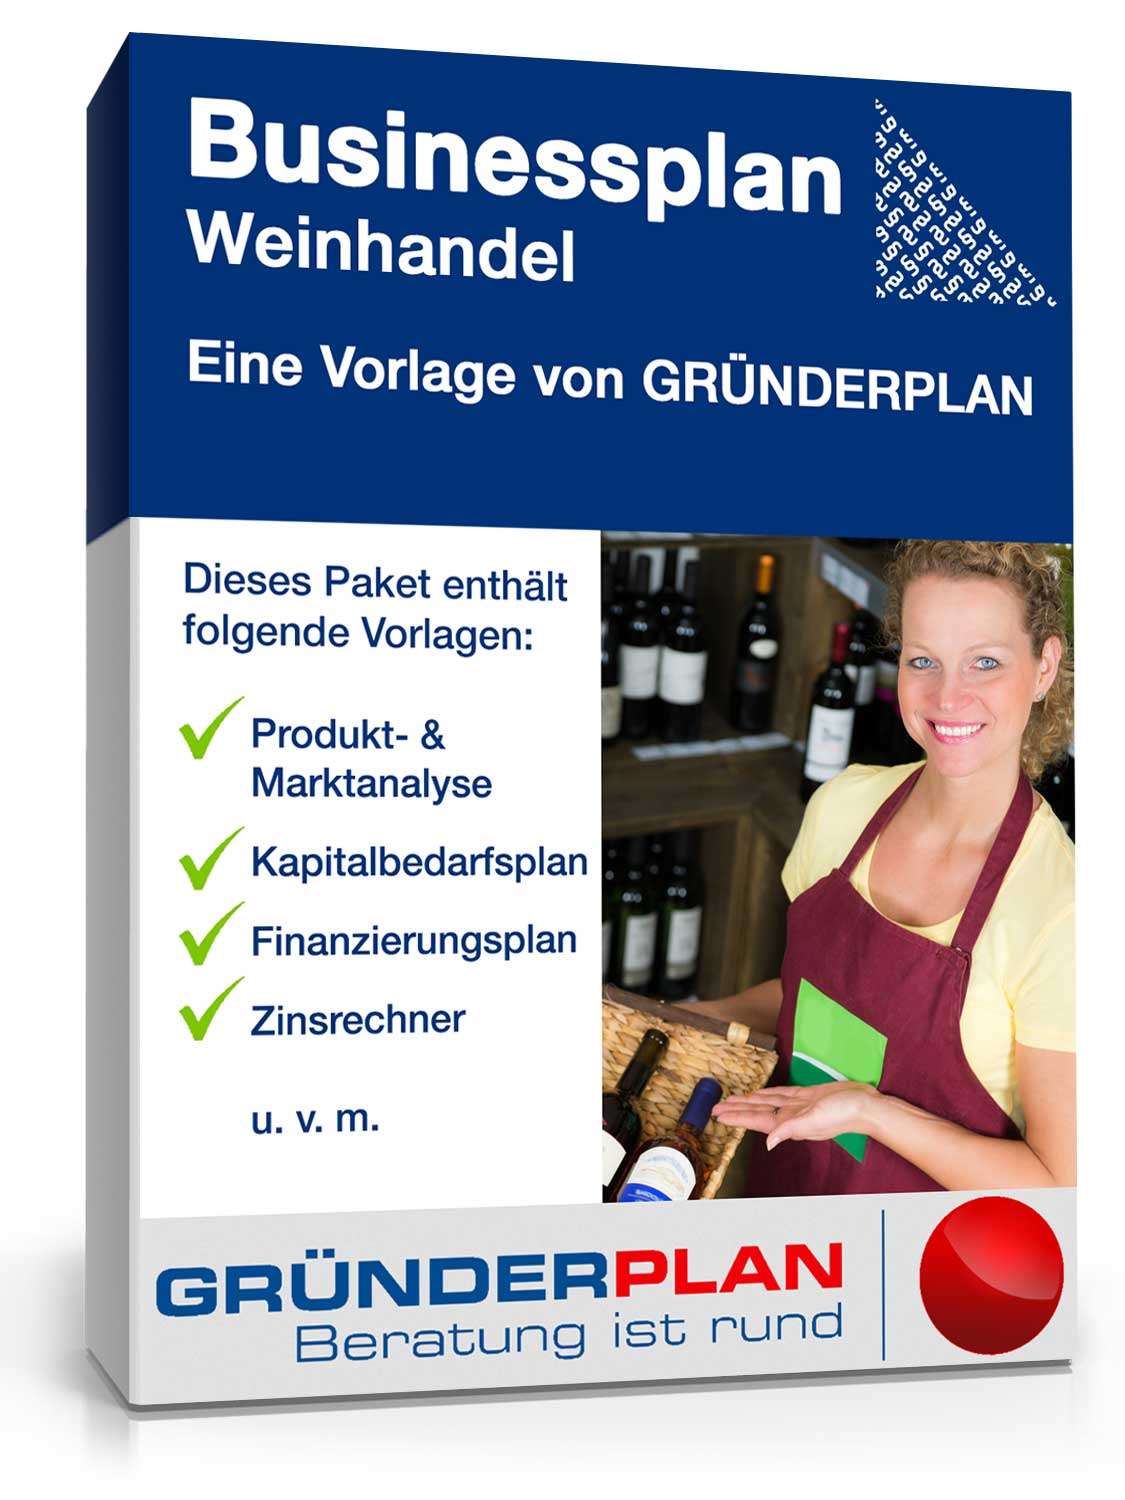 Hauptbild des Produkts: Businessplan Weinhandel von Gründerplan